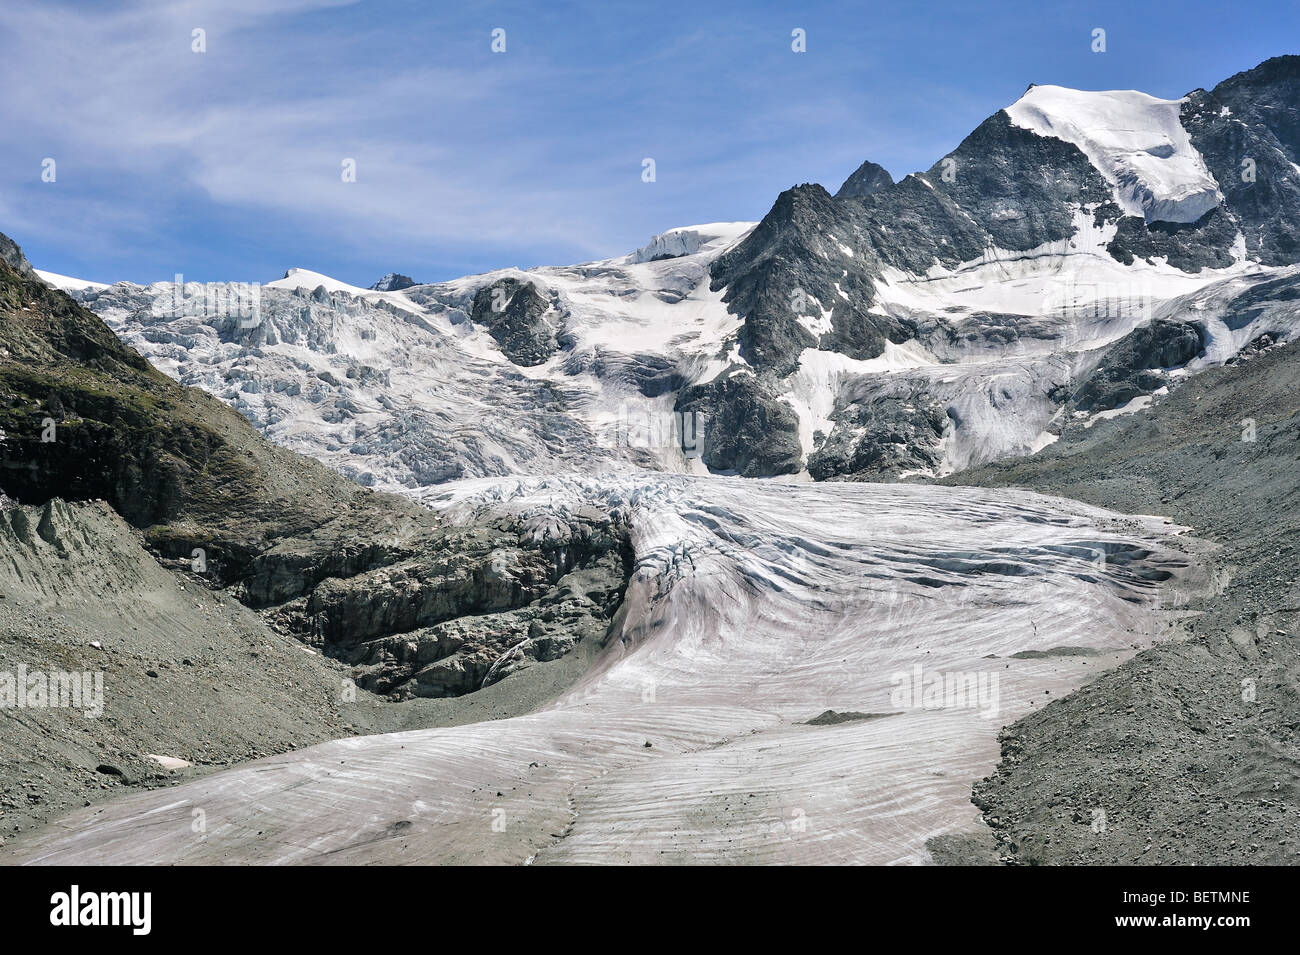 La moraine du glacier de Moiry montrant et retrait des glaces et de la neige dans les Alpes Pennines / Walliser Alpen, Valais / Wallis (Suisse) Banque D'Images